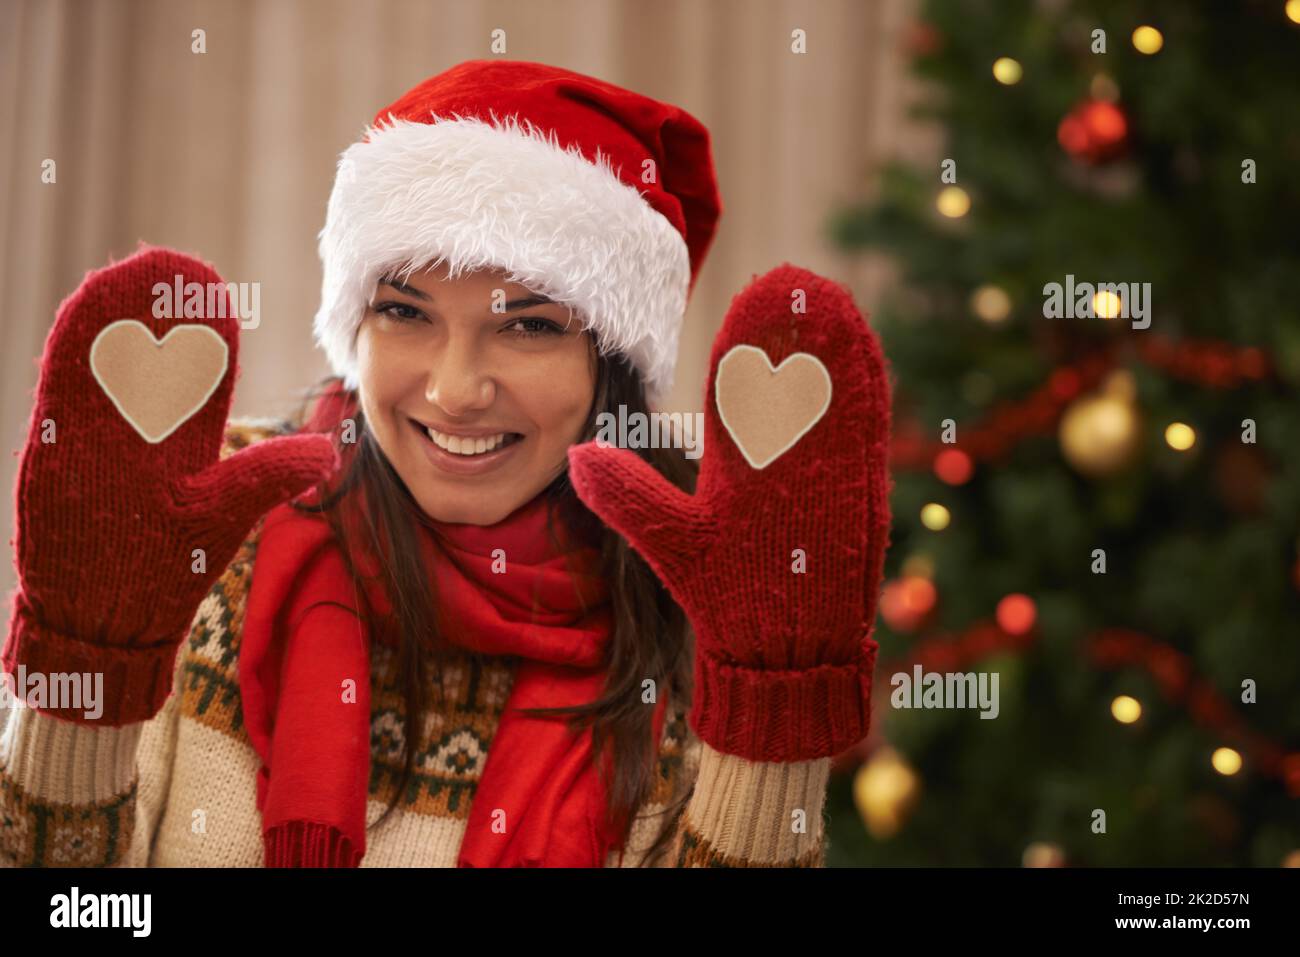 Weihnachtsliebe. Porträt einer attraktiven jungen Frau, die Ihnen ihre Weihnachtshandschuhe zeigt. Stockfoto